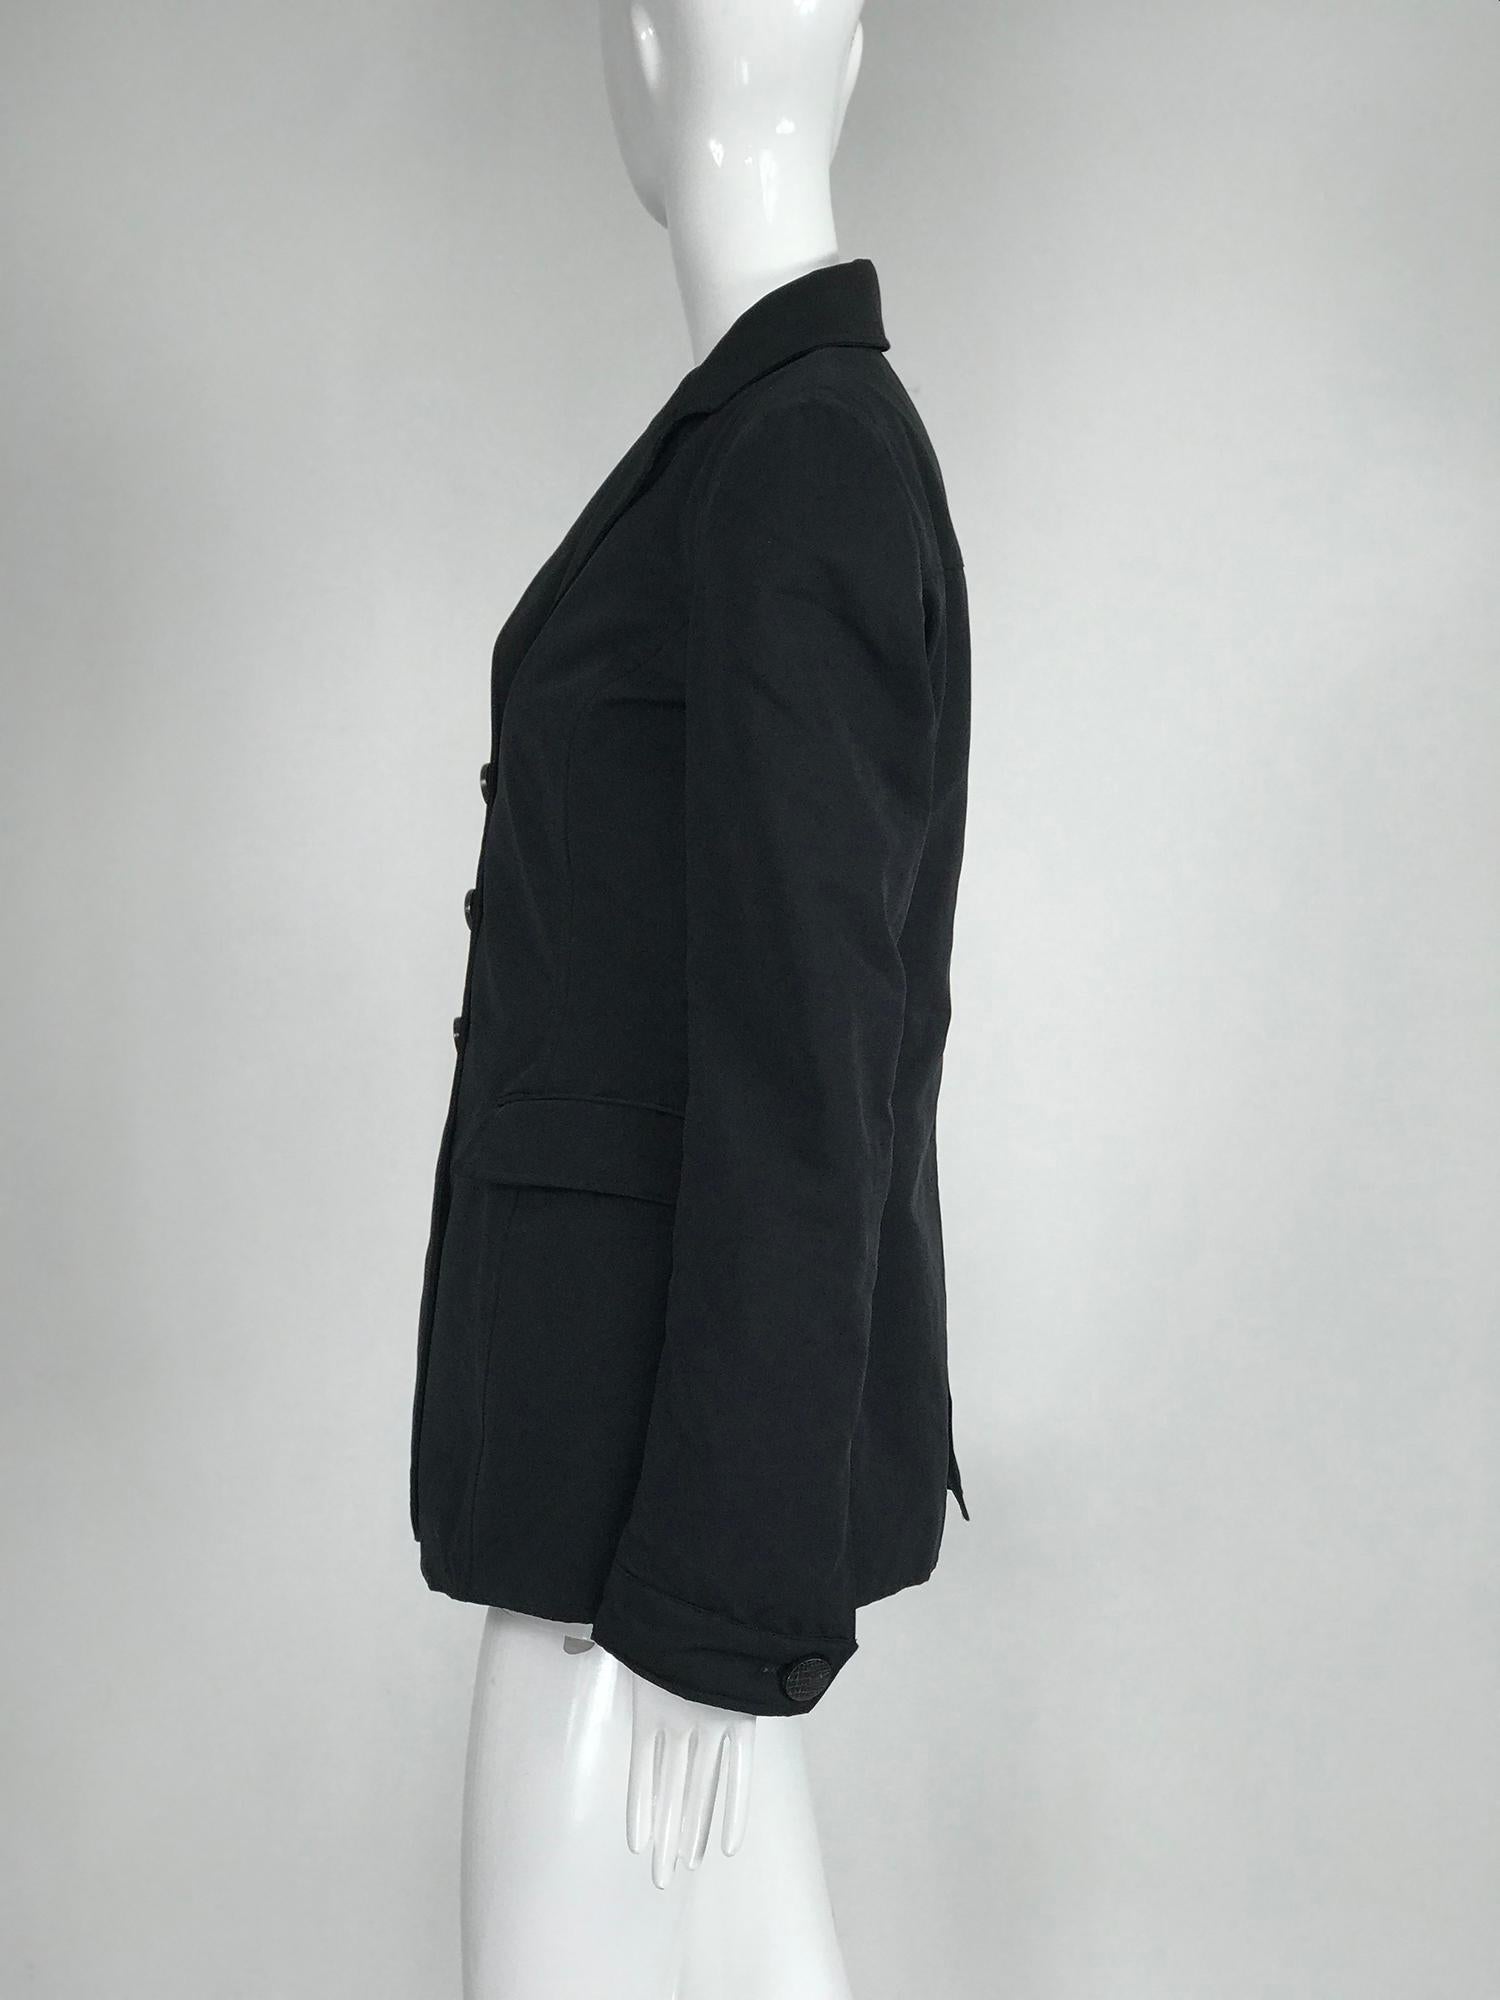 Giorgio Armani Collezioni Black Nylon Single Breasted Riding Jacket 2